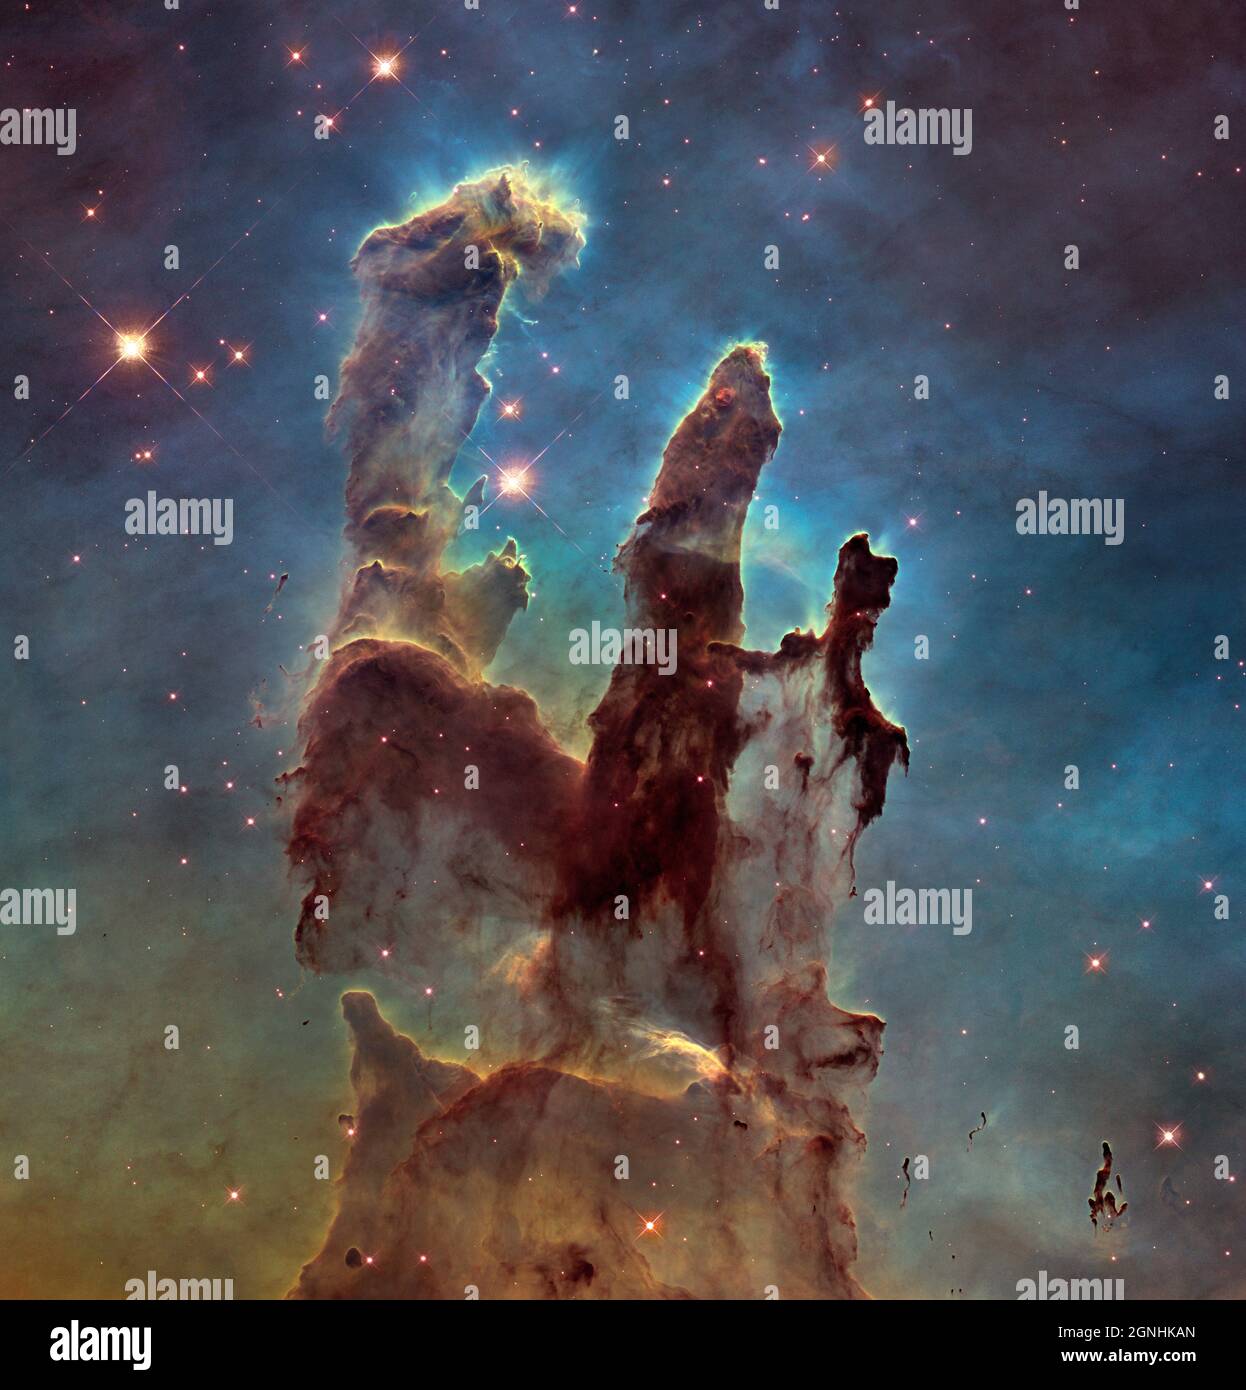 Die berühmten Säulen der Schöpfung, ein Teil einer kleinen Region des Adlernebels, einer riesigen Sternentstehungsregion, die 6,500 Lichtjahre von der Erde entfernt ist.die Farben im Bild unterstreichen die Emission von mehreren chemischen Elementen. Die Sauerstoffausstrahlung ist blau, Schwefel orange und Wasserstoff und Stickstoff grün. . Bildquelle NASA/ESA Hubble Space Telescope Stockfoto